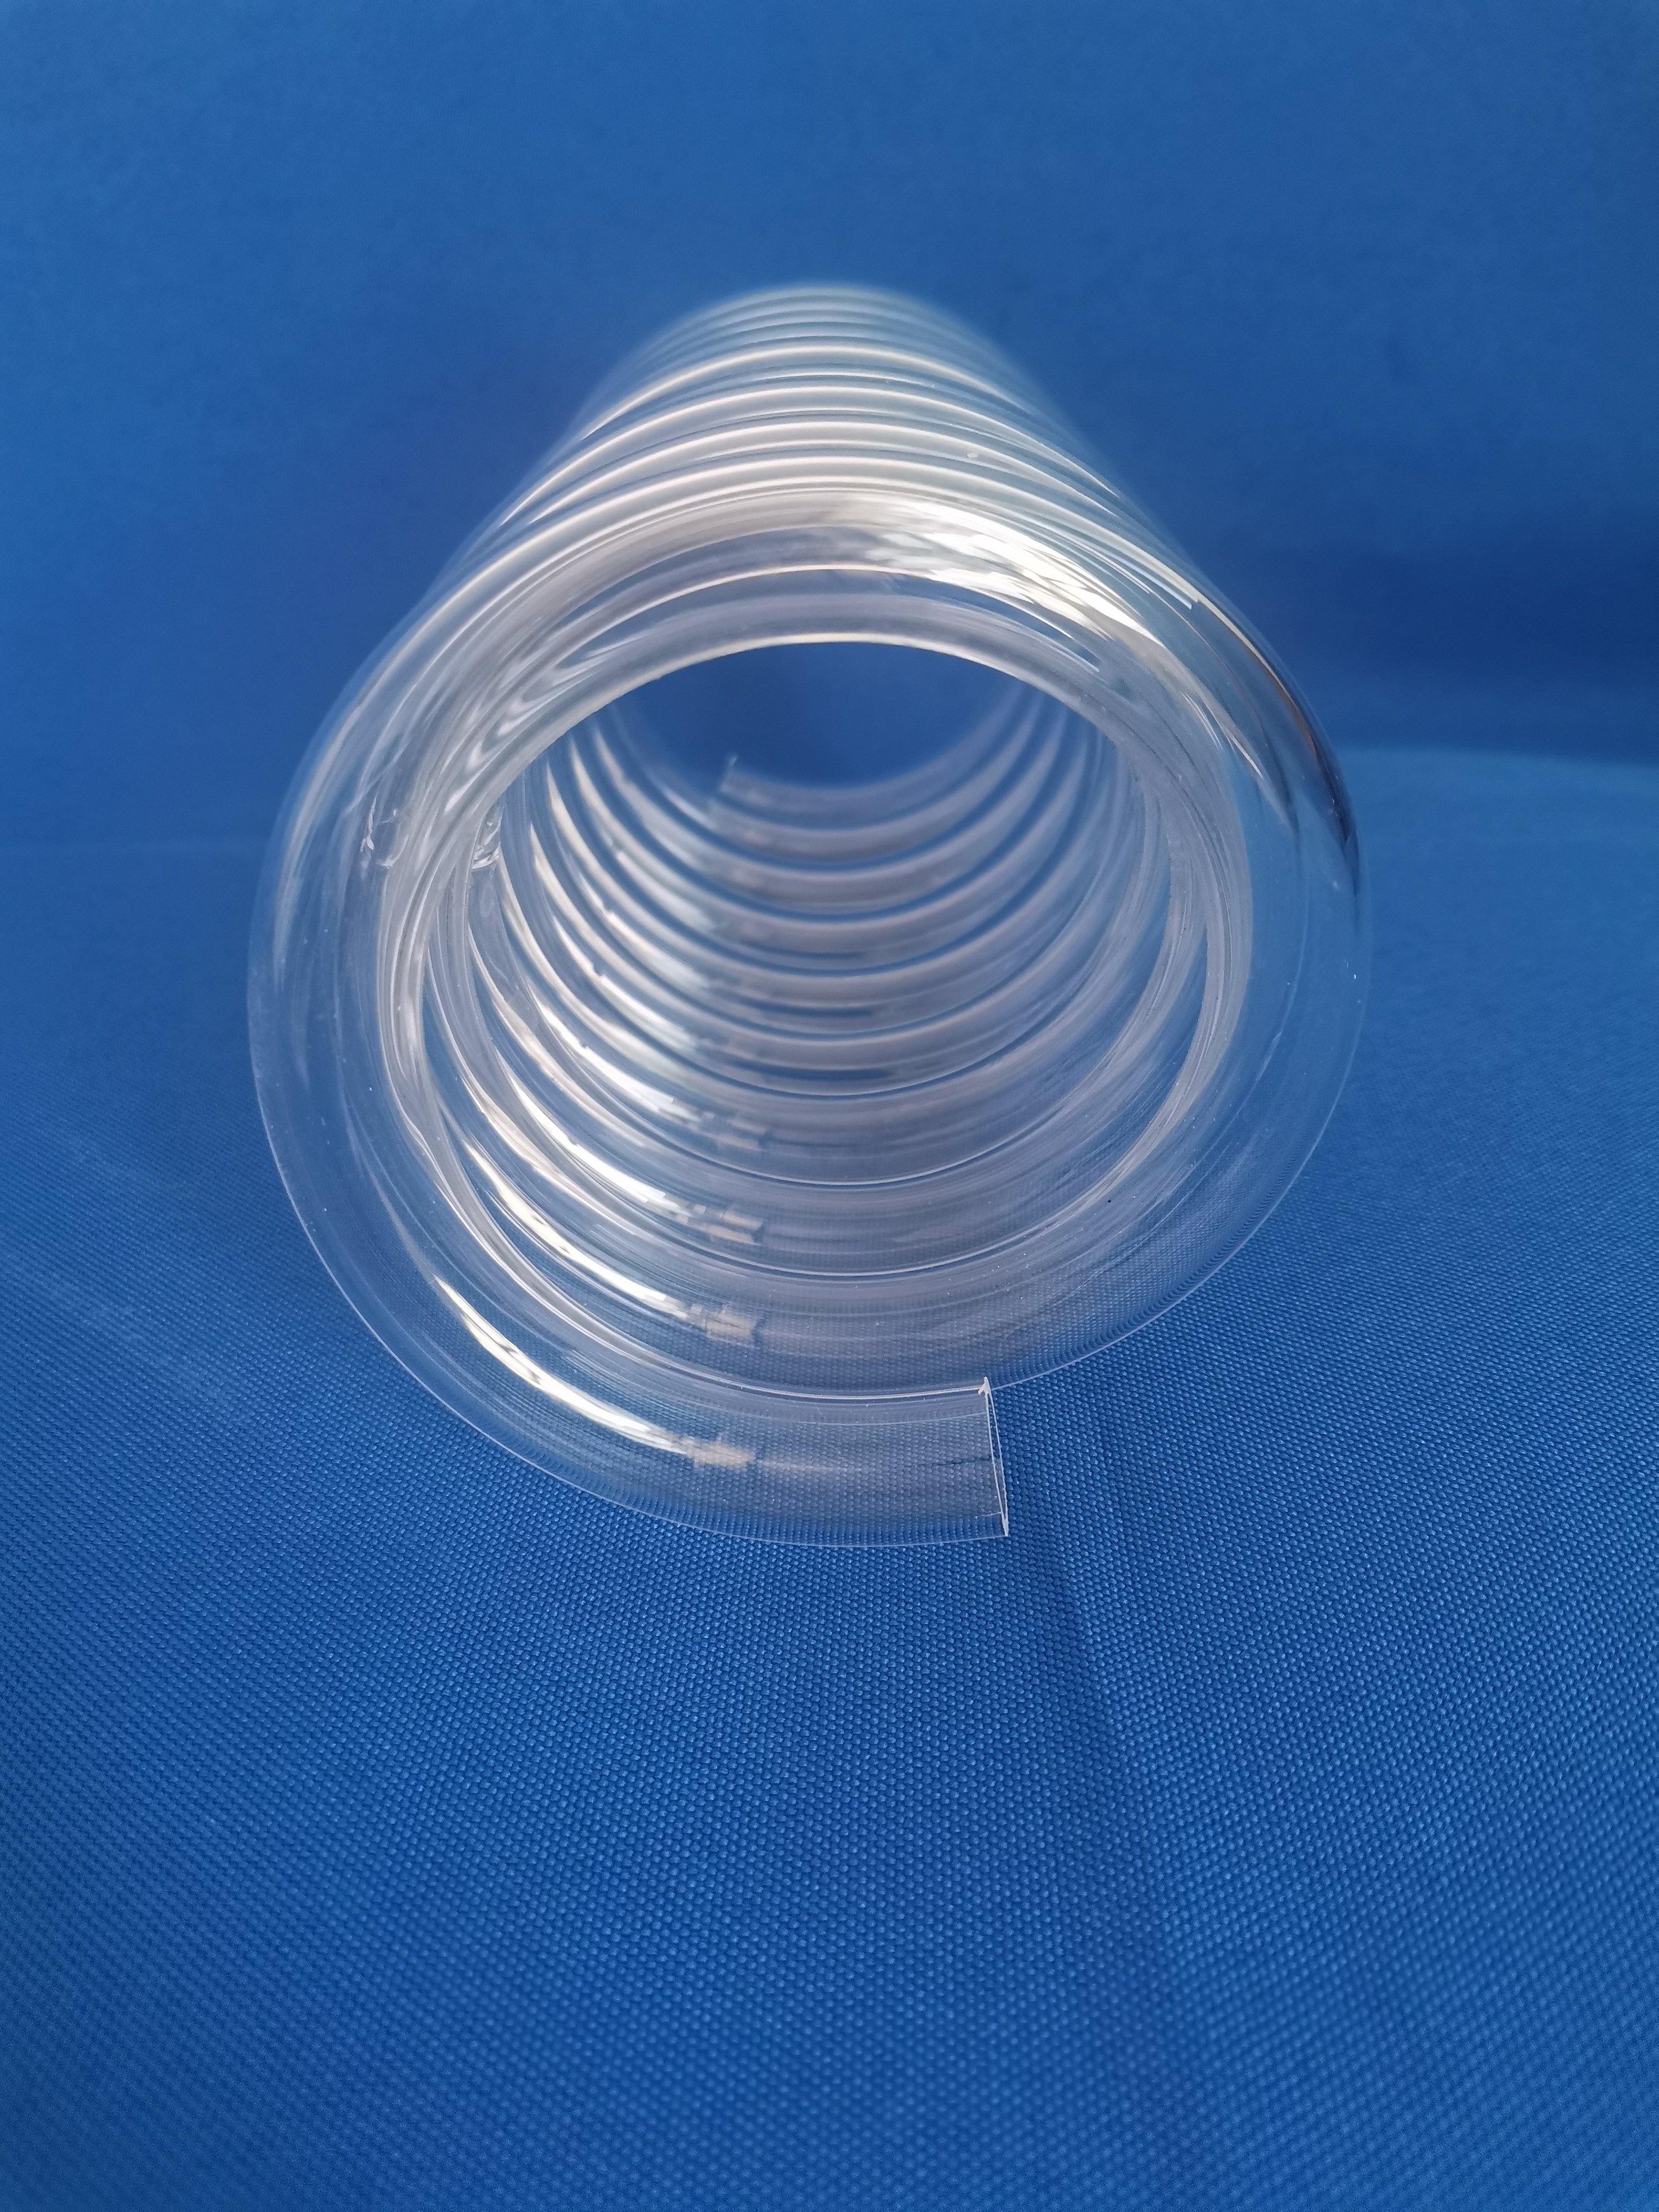 Anti-corrosion High Temperature Resistance Silica Fused Quartz Spiral Coil Tube/Pipe - MICQstore